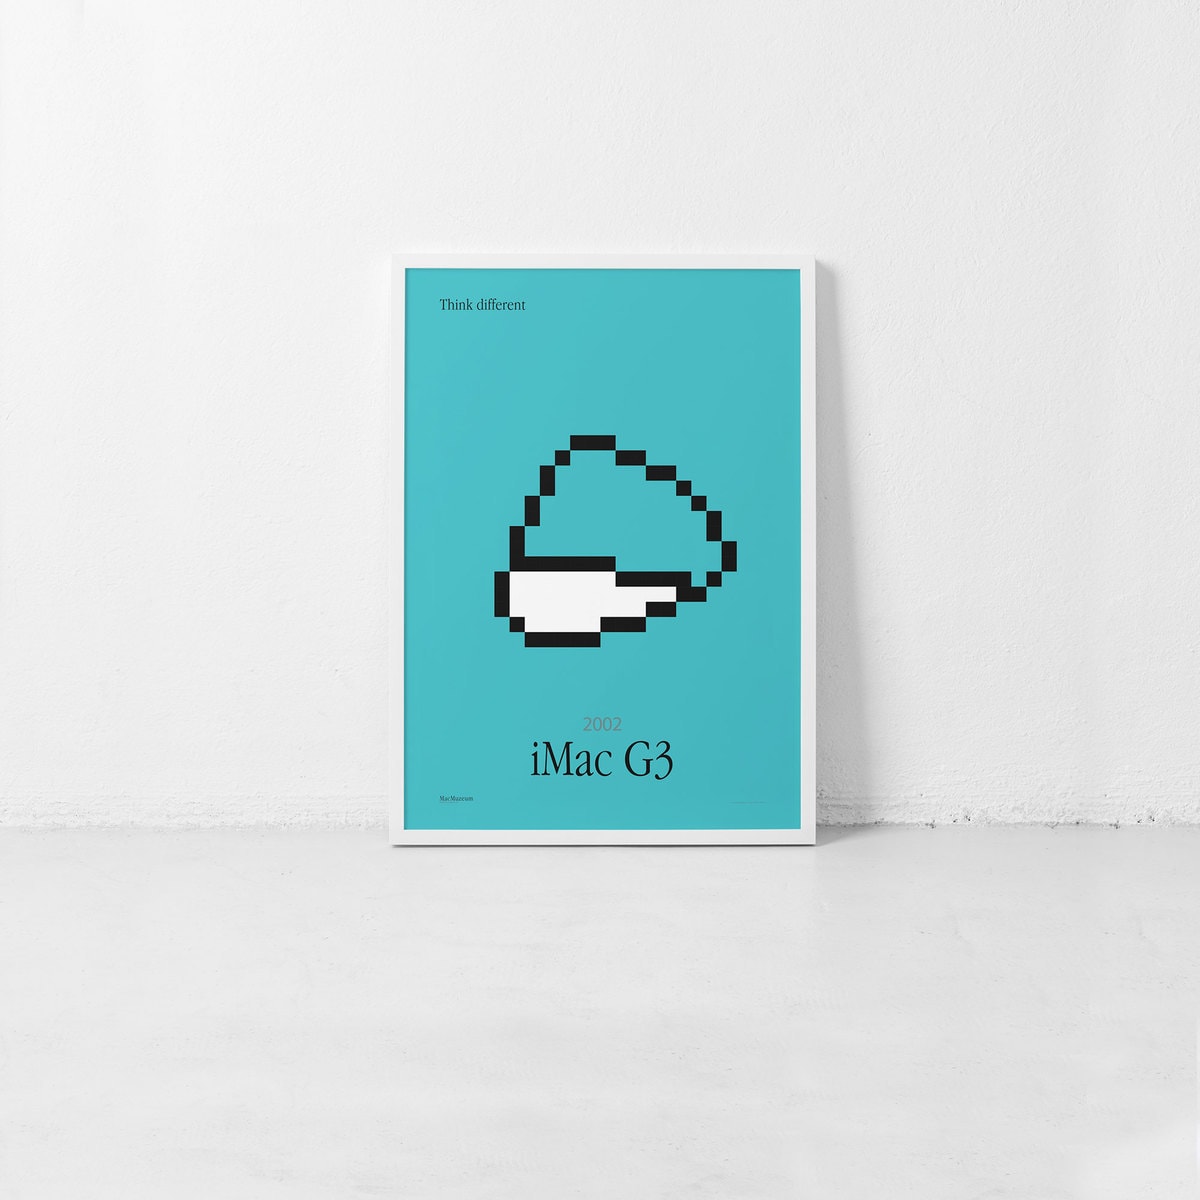 iMac G3 – Iconic